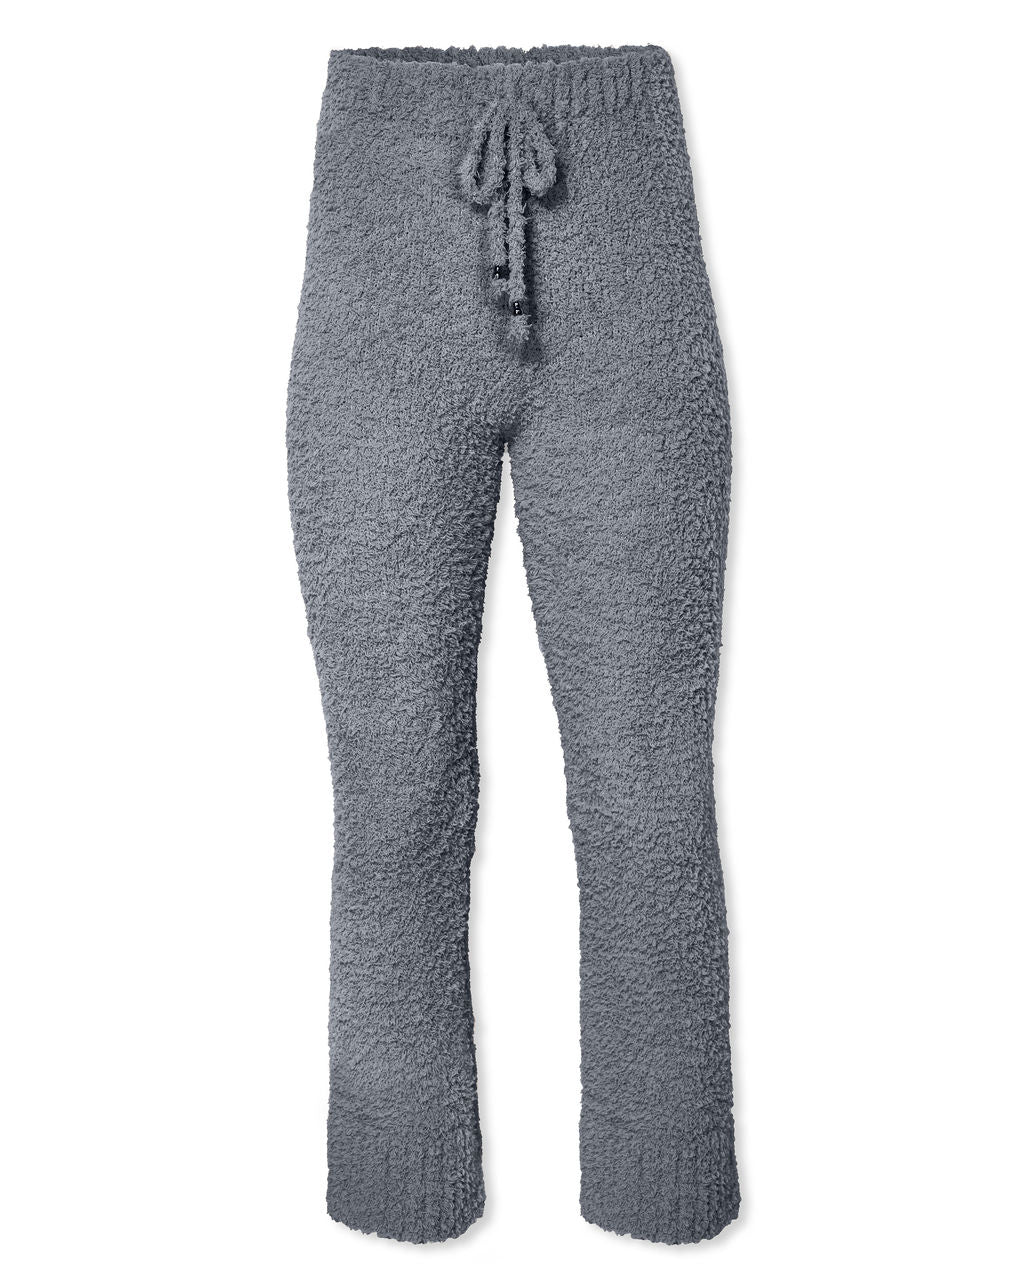 Cozy Town Soft Knit Drawstring Pants - Grey - SALE